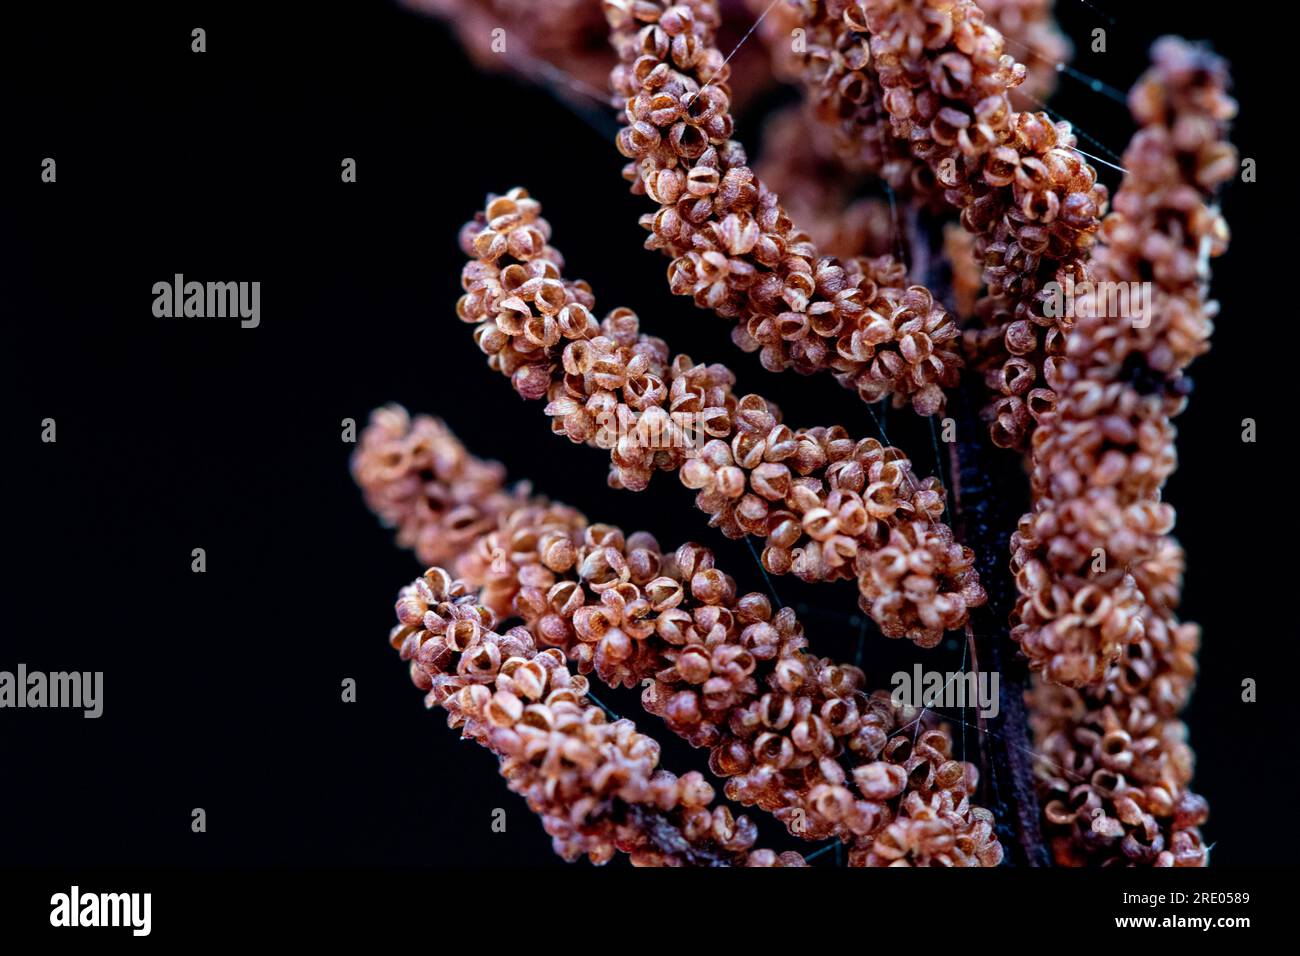 royal fern (Osmunda regalis), sporangia against black background, Netherlands Stock Photo